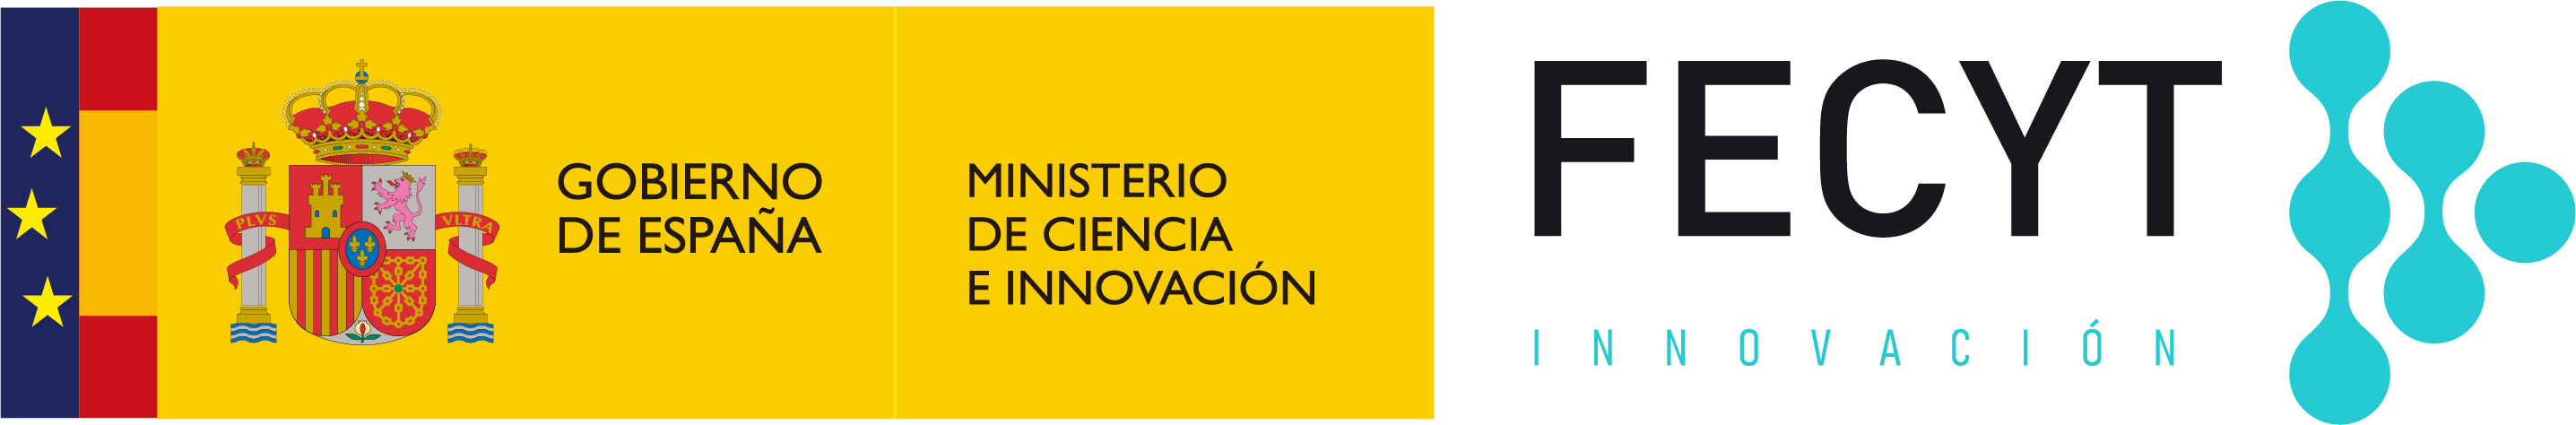 Fundación Española para la Ciencia y la Tecnología (FECYT)